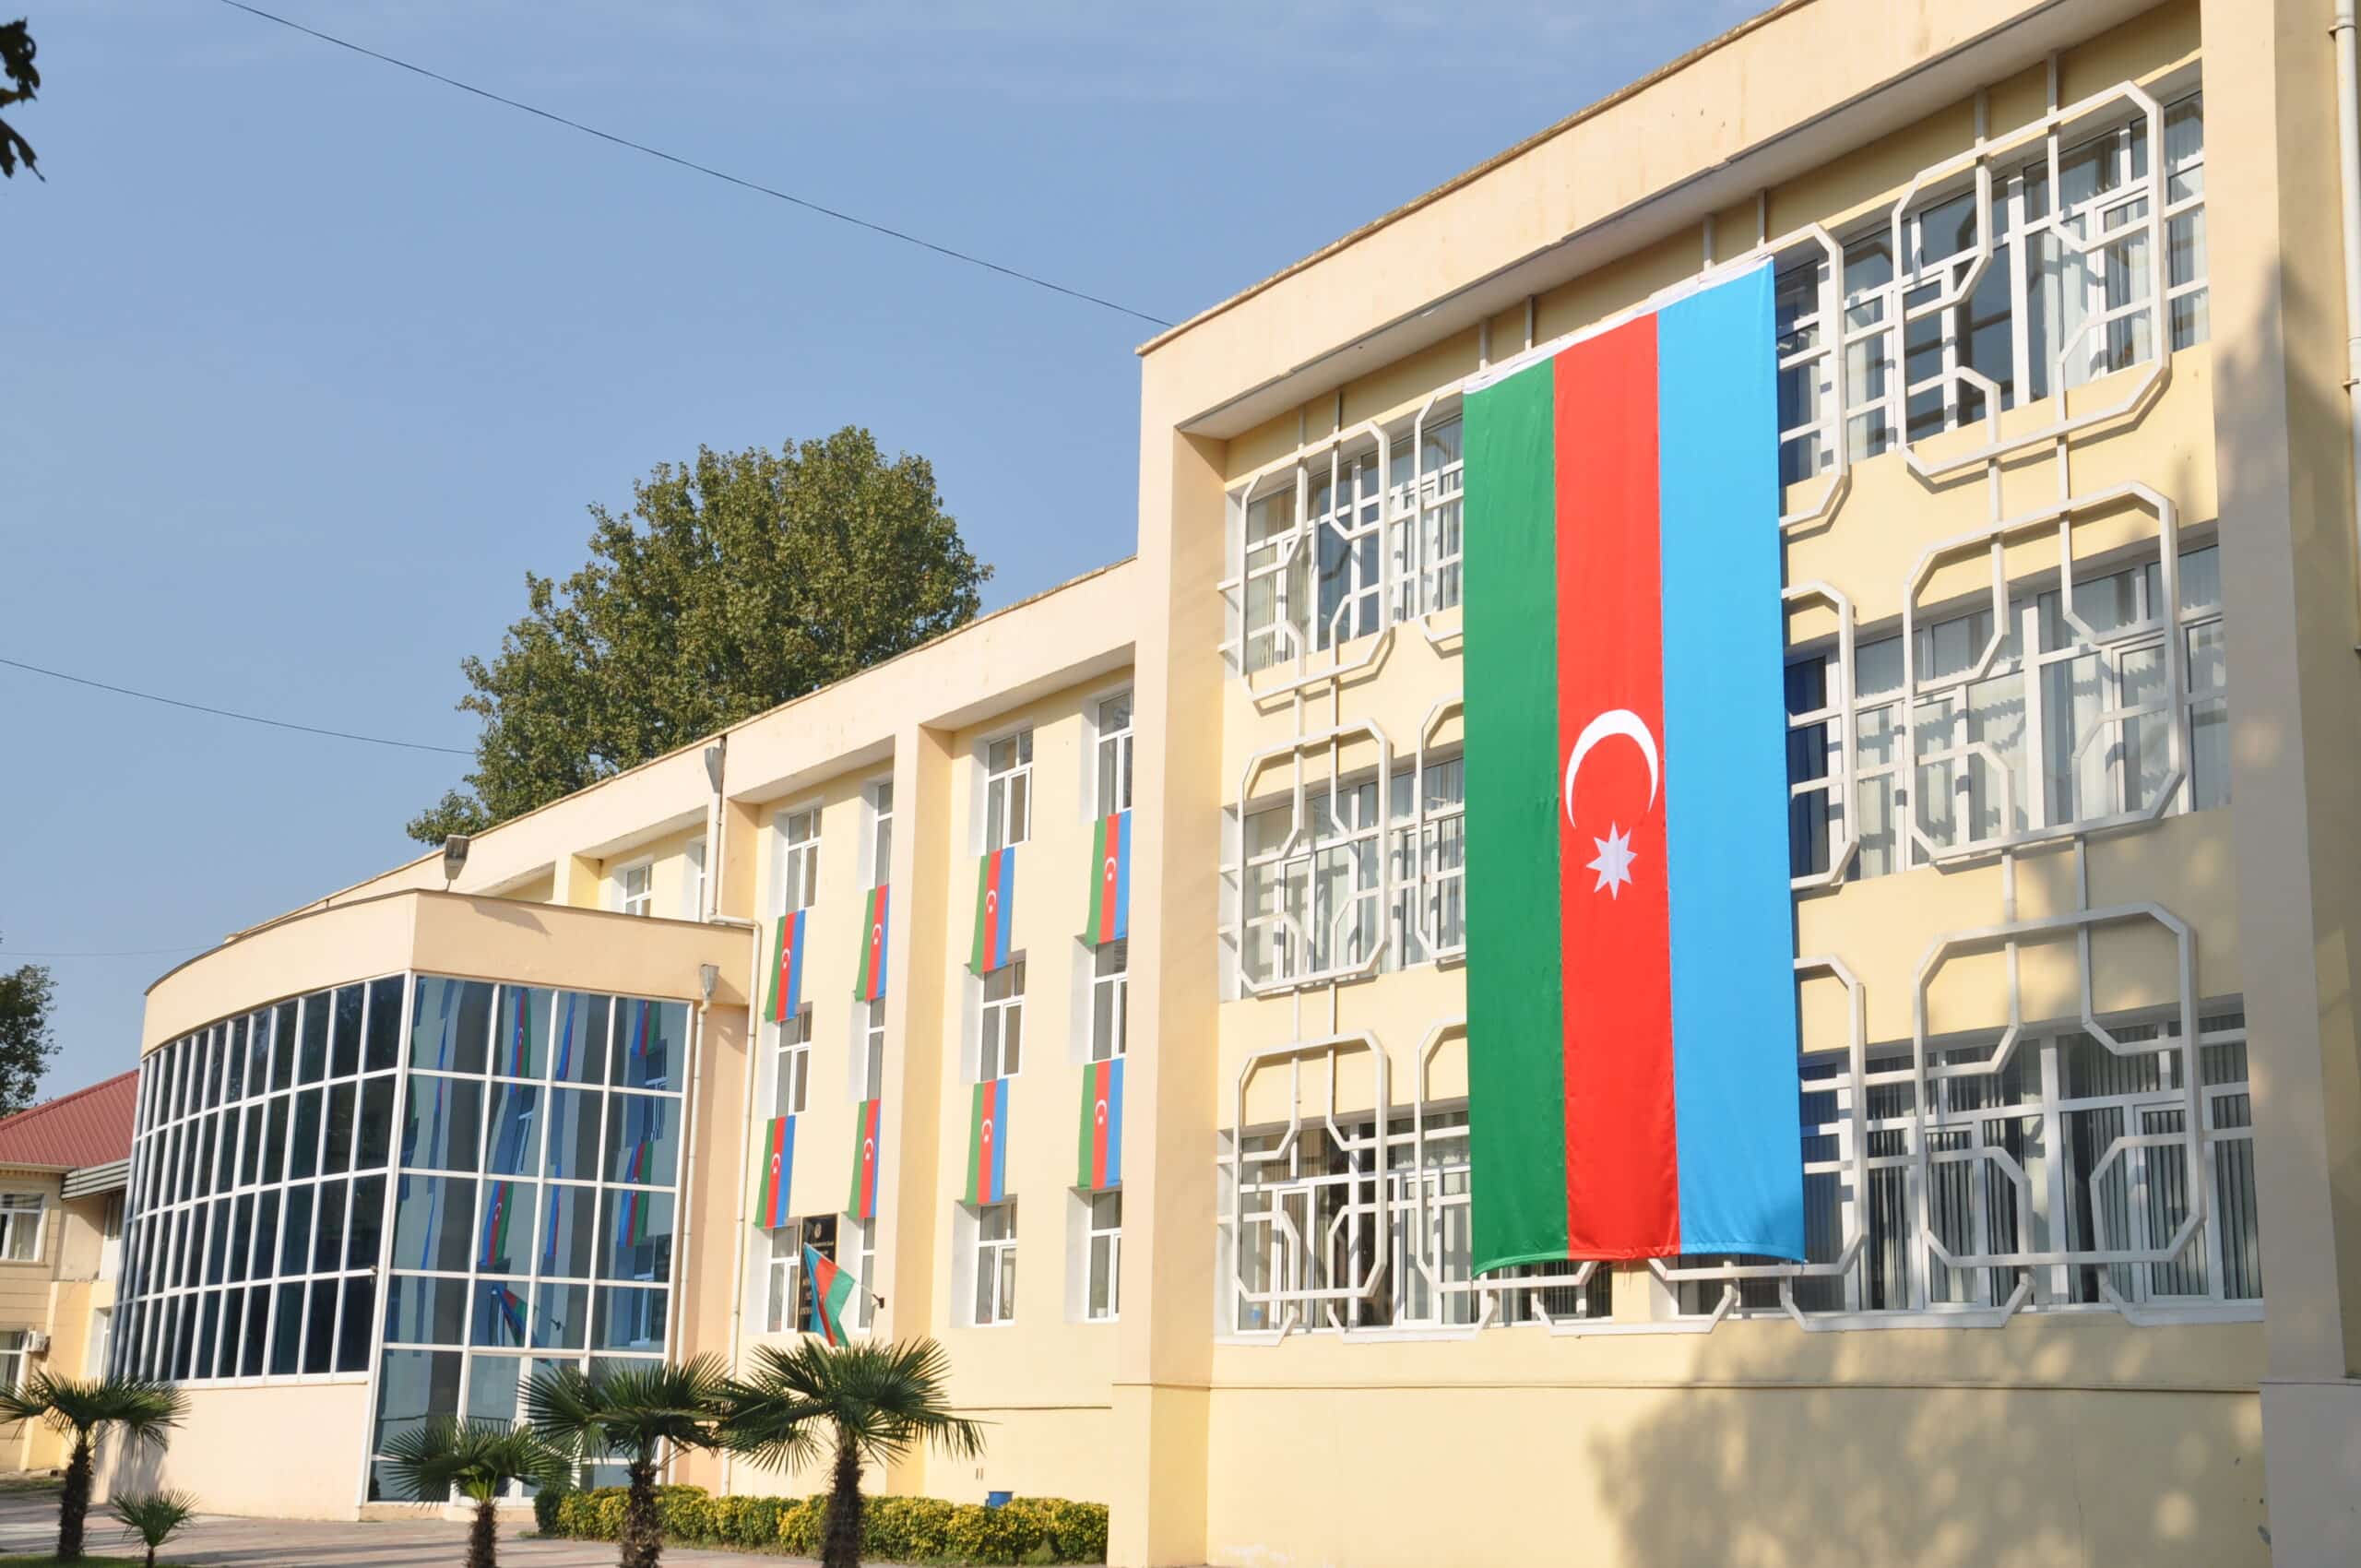 Mingəçevir Dövlət Universiteti “Erasmus+” proqramının qalibi olub (“Azərbaycan” qəzeti, 30.09.2022)